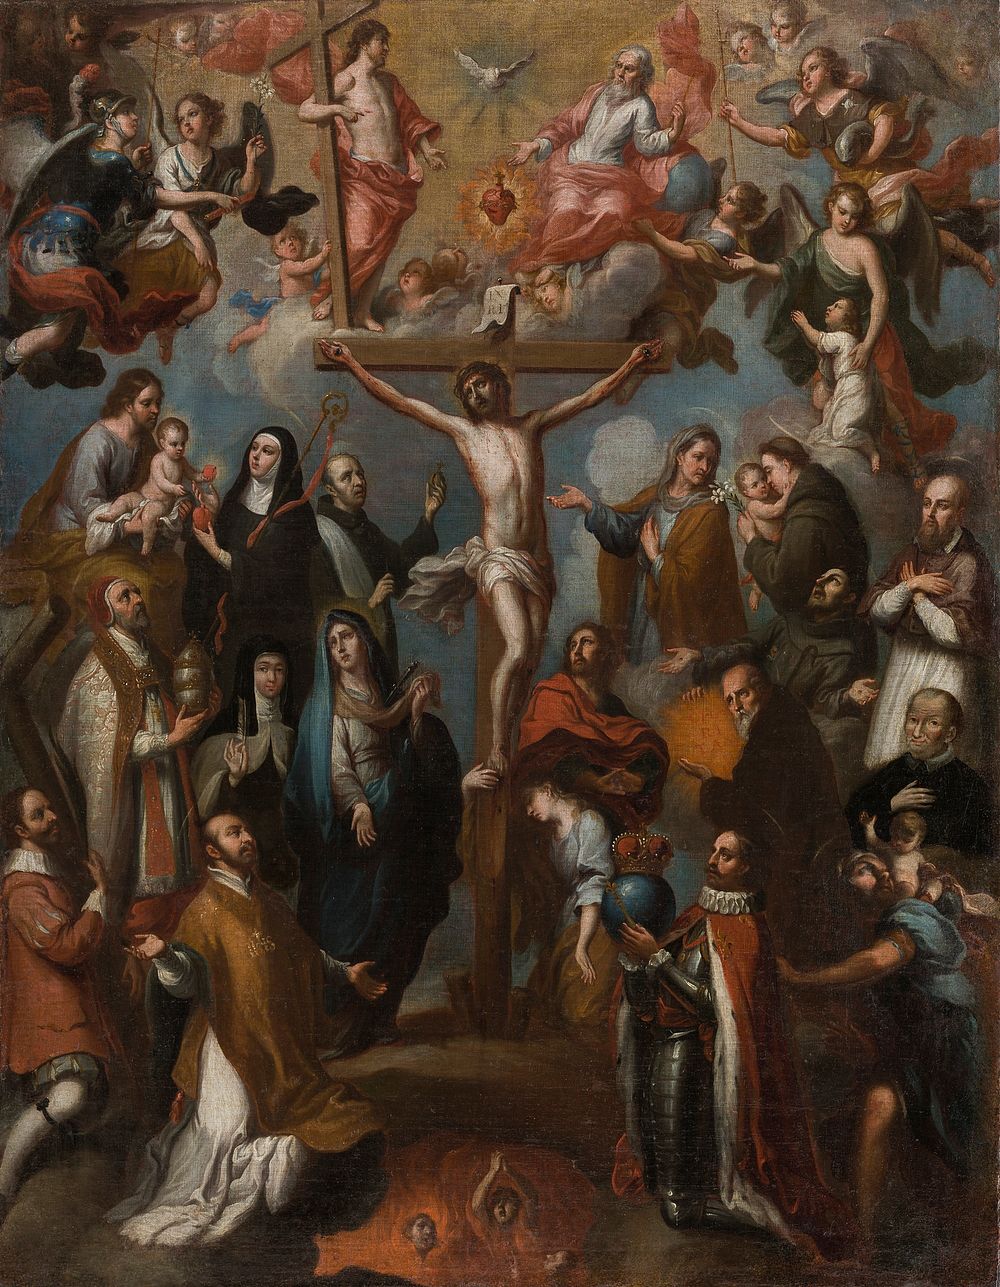 Allegory of the Crucifixion with Jesuit Saints (Alegoria de la Crucifixion con santos jesuitas) by Francisco Antonio Vallejo